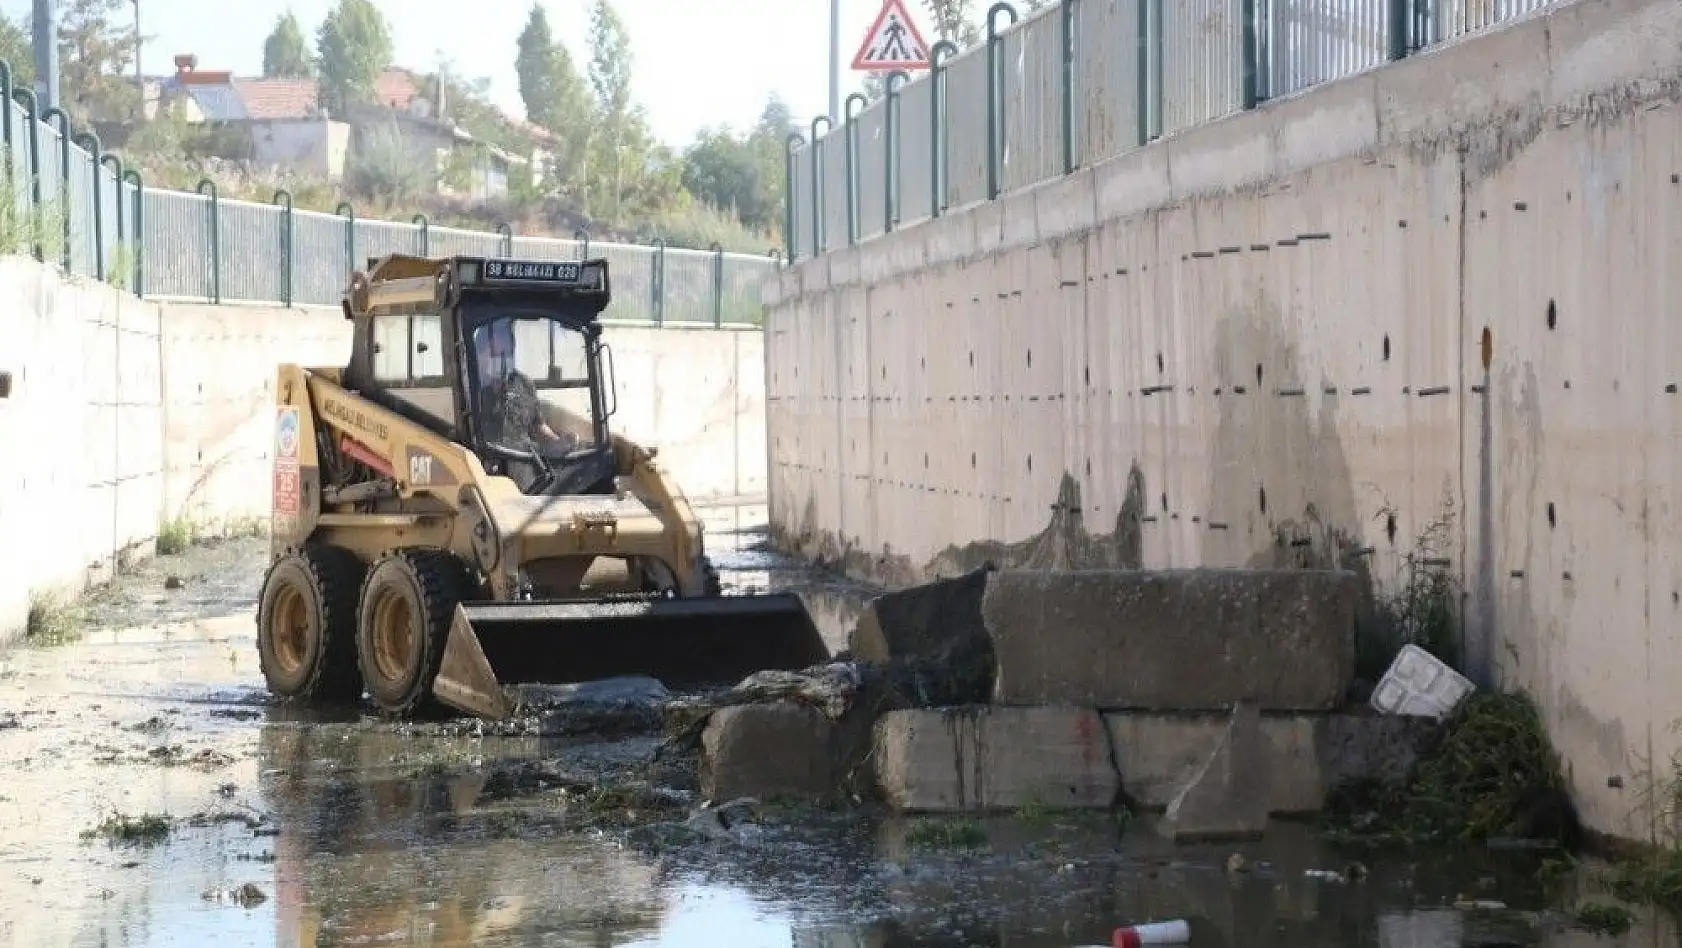 Yağışlara karşı Melikgazi genelinde yağmur suyu kanalları temizleniyor
